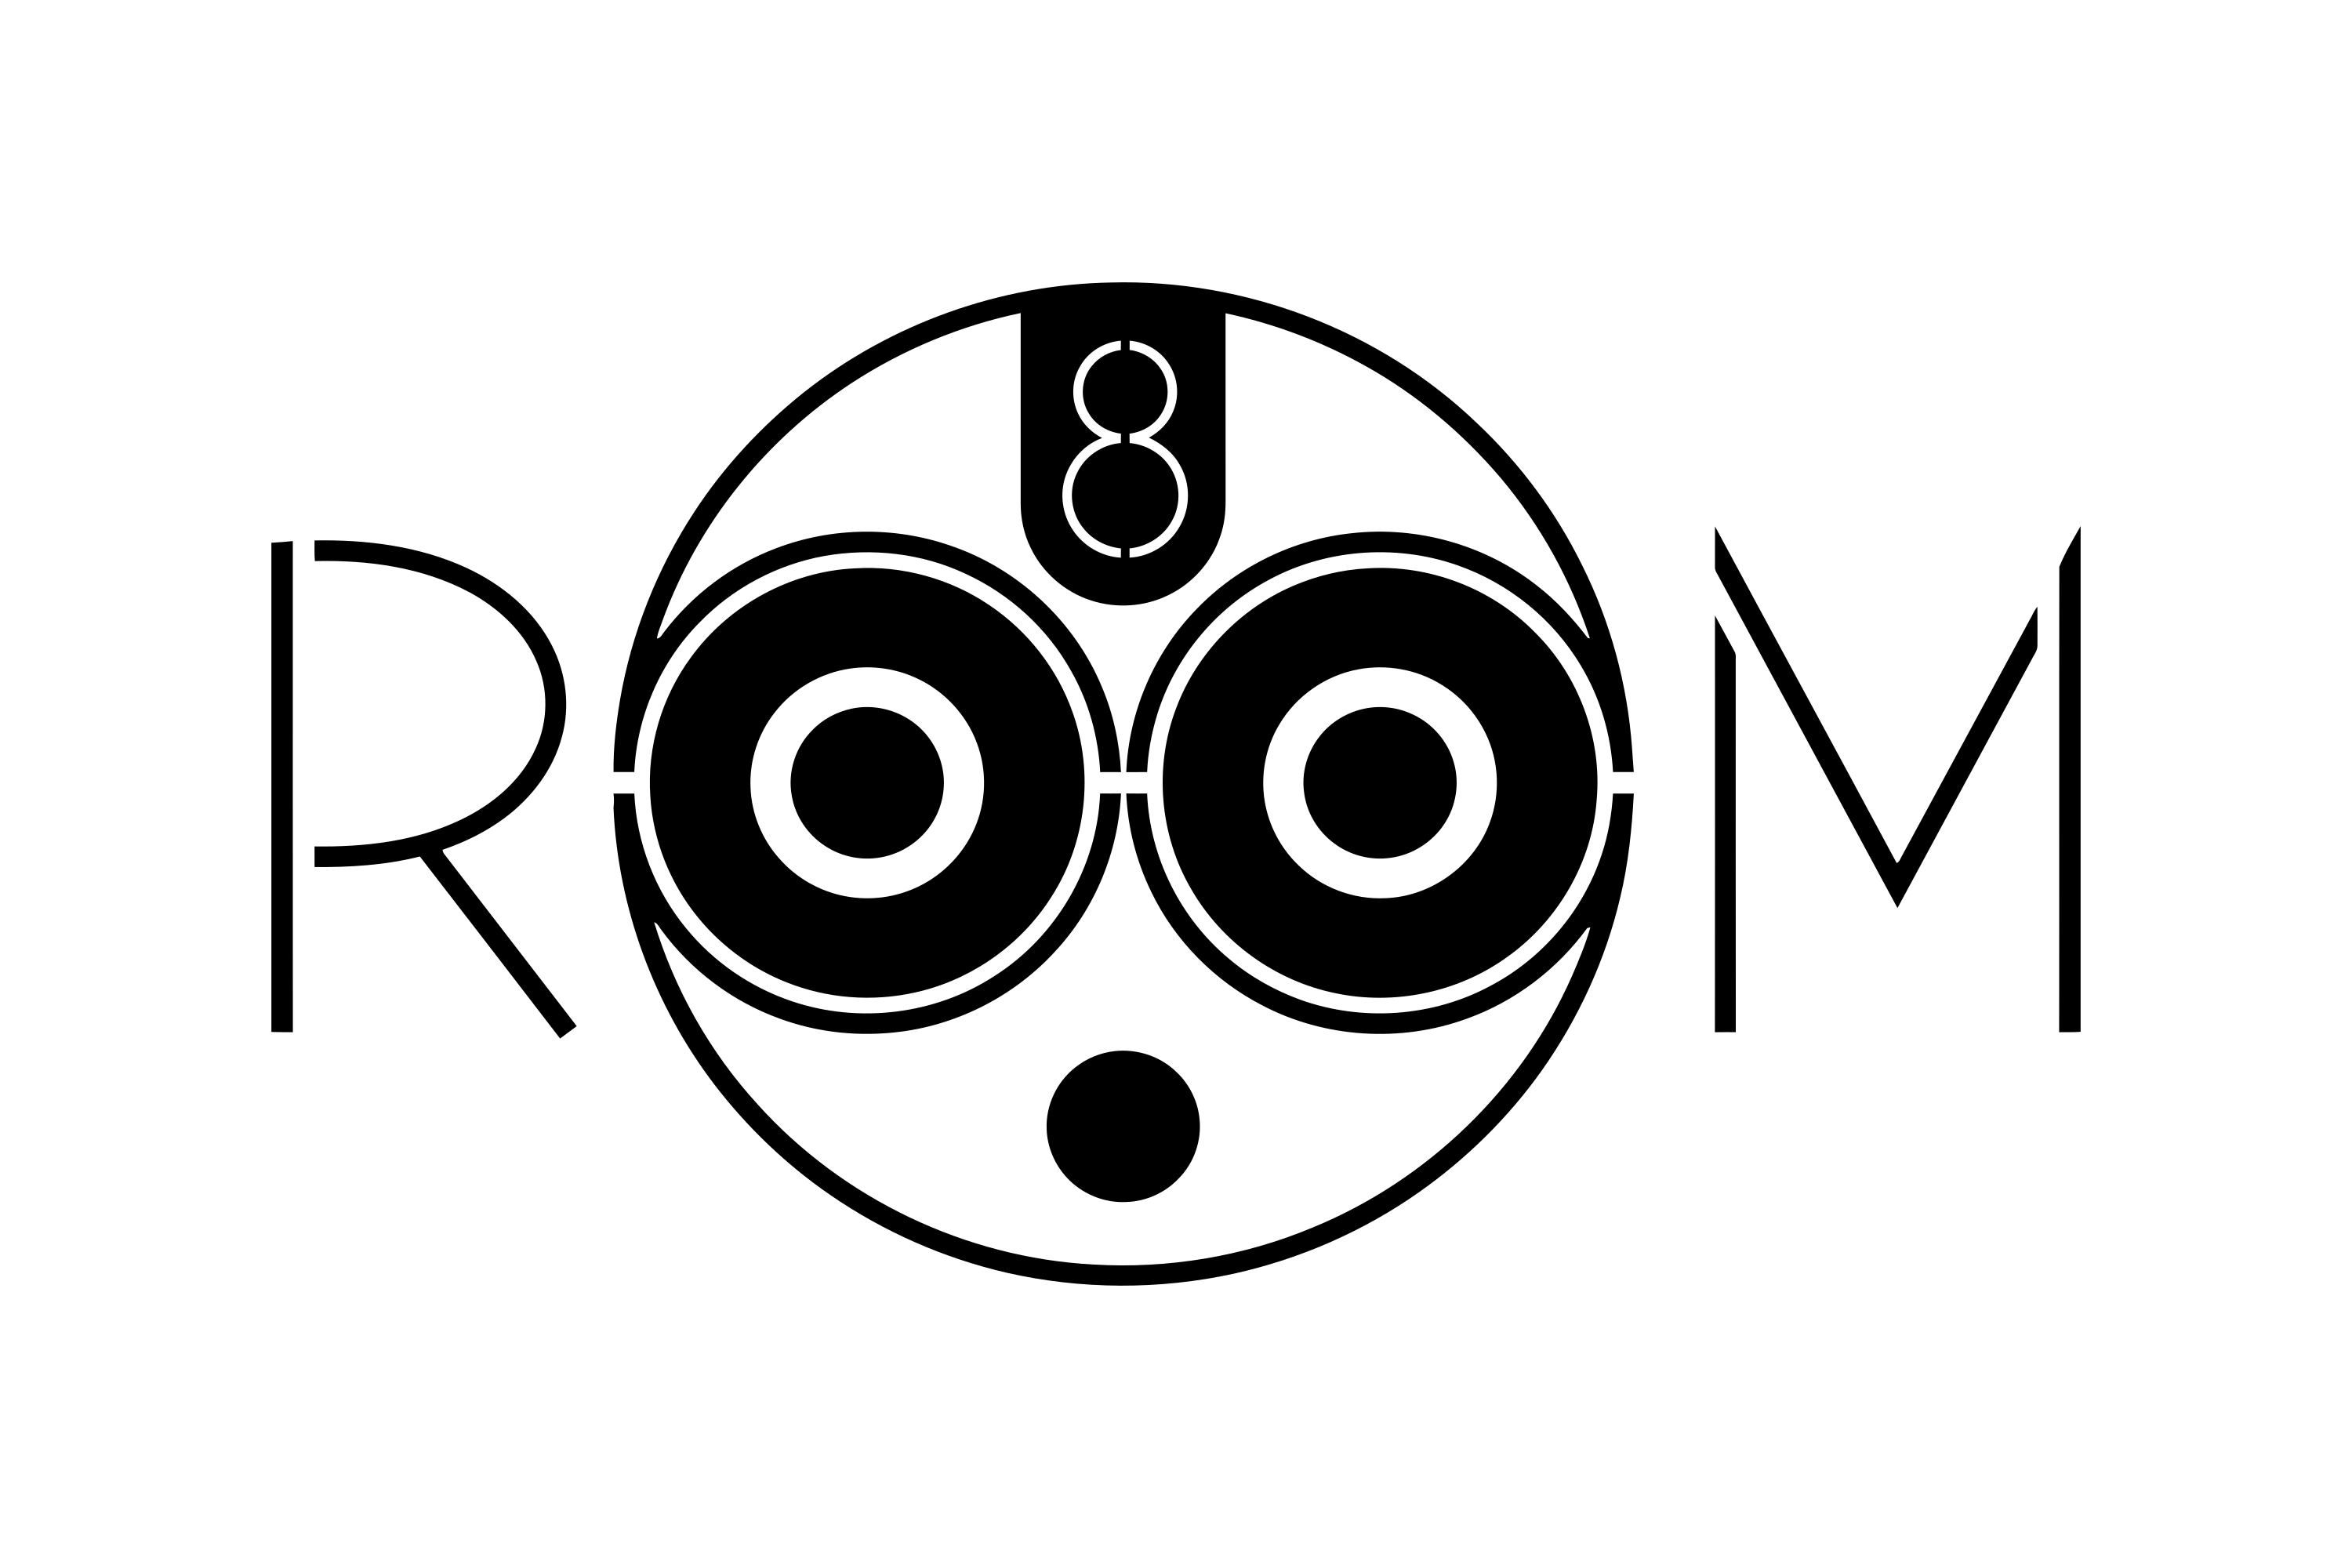 Download Download Room 8 Studio Logo in SVG Vector or PNG File ...